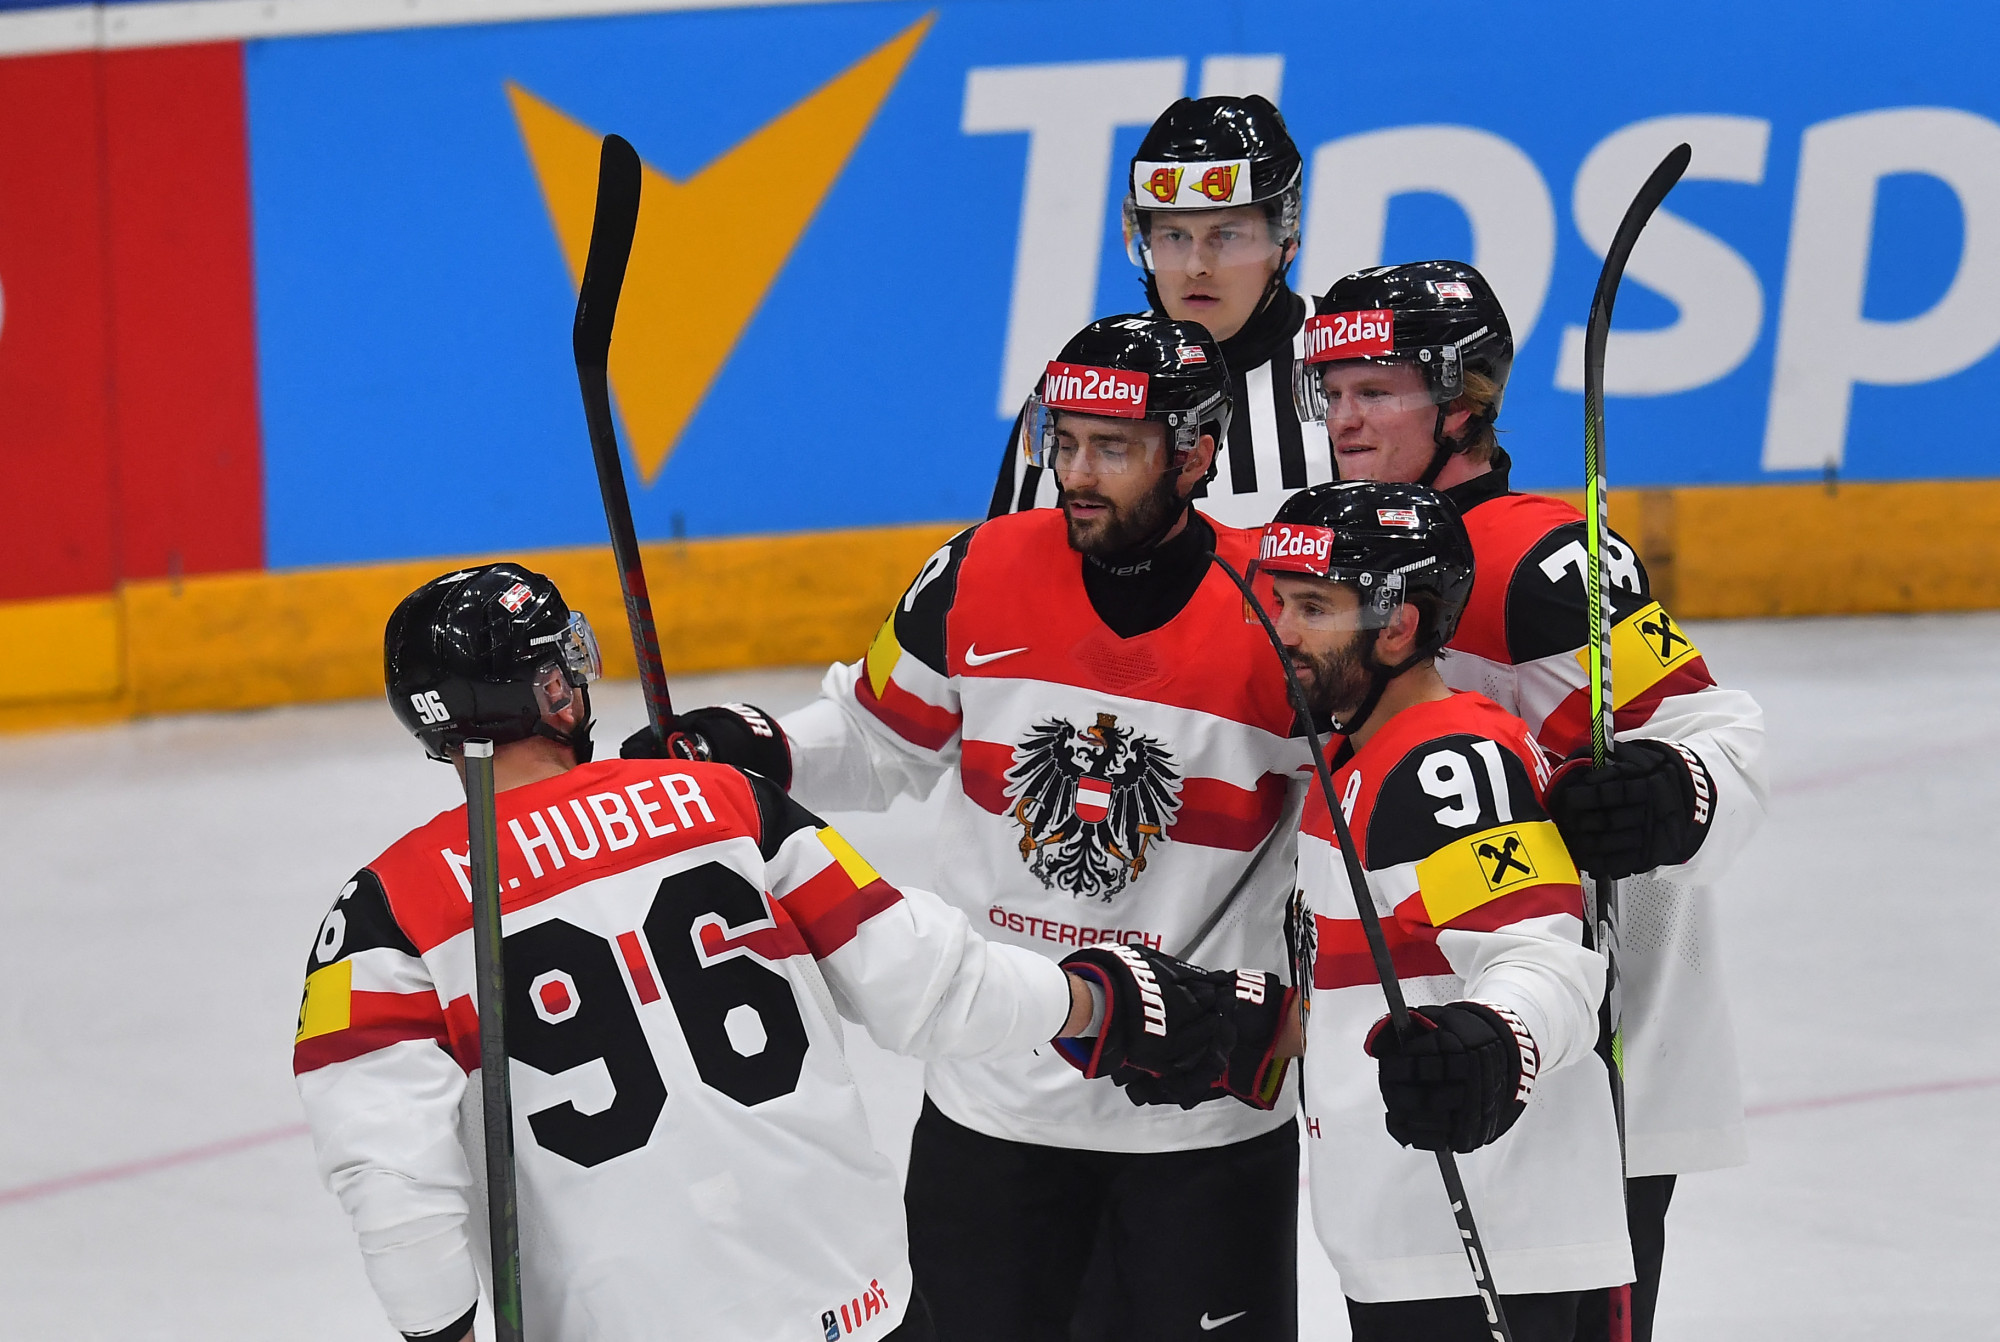 Minden idők legextatikusabb harmadát produkálta Ausztria Kanada ellen a jégkorong-világbajnokságon